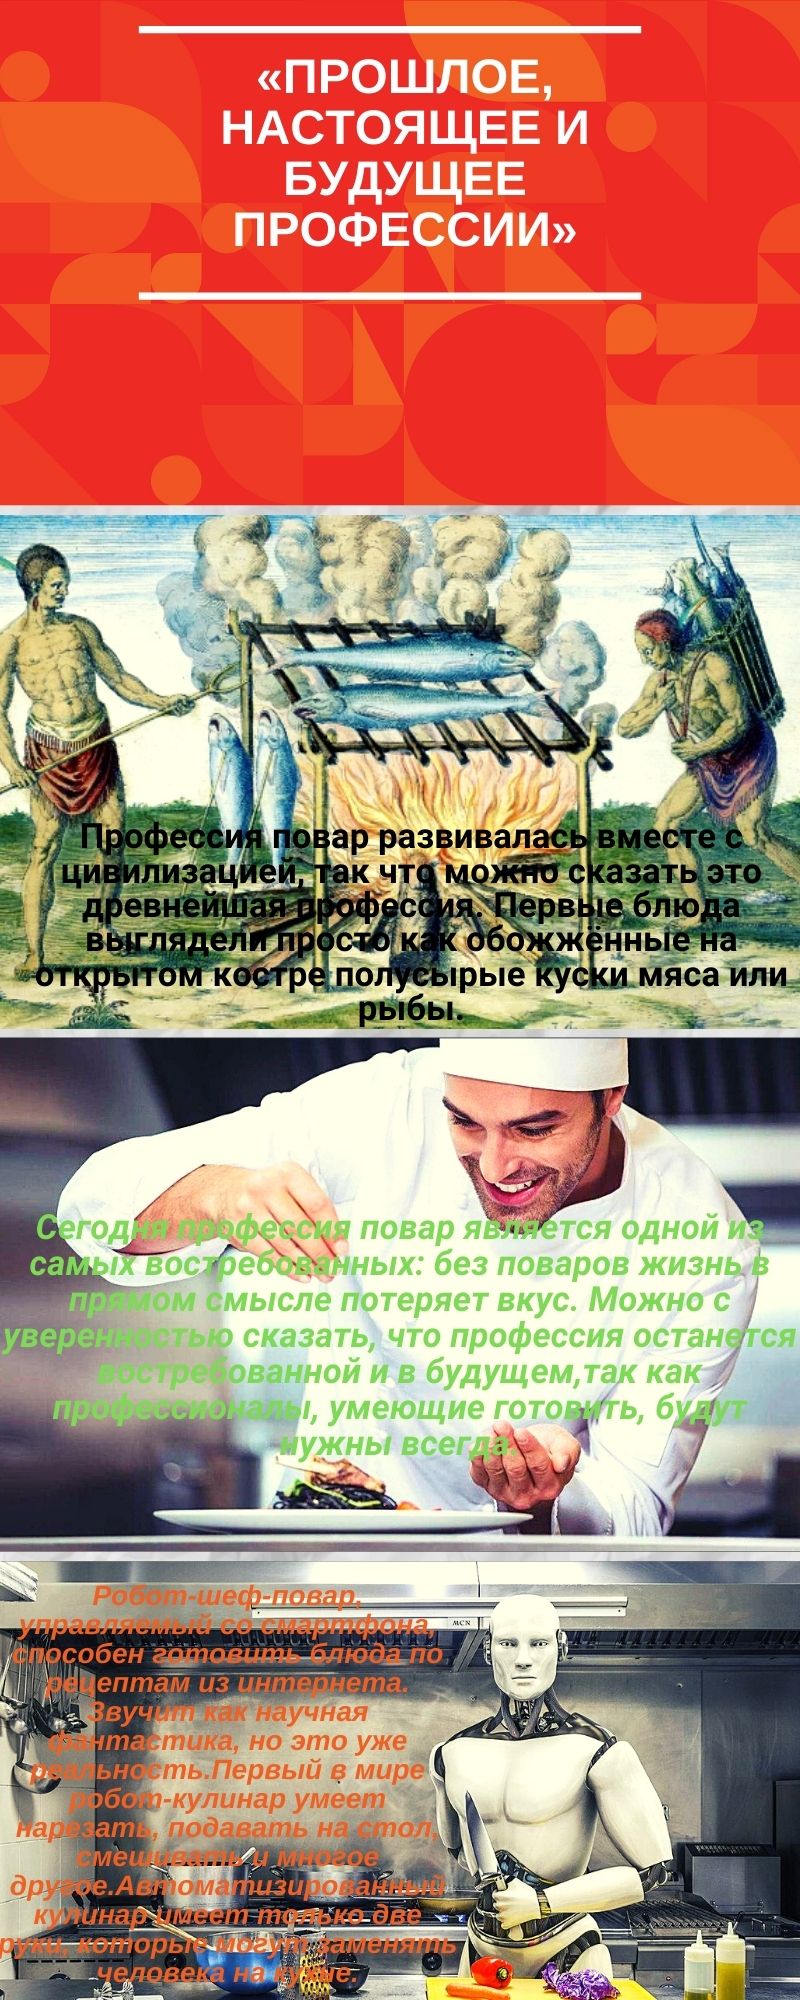 Черемховский техникум промышленной индустрии и сервиса профессия Повар.jpg